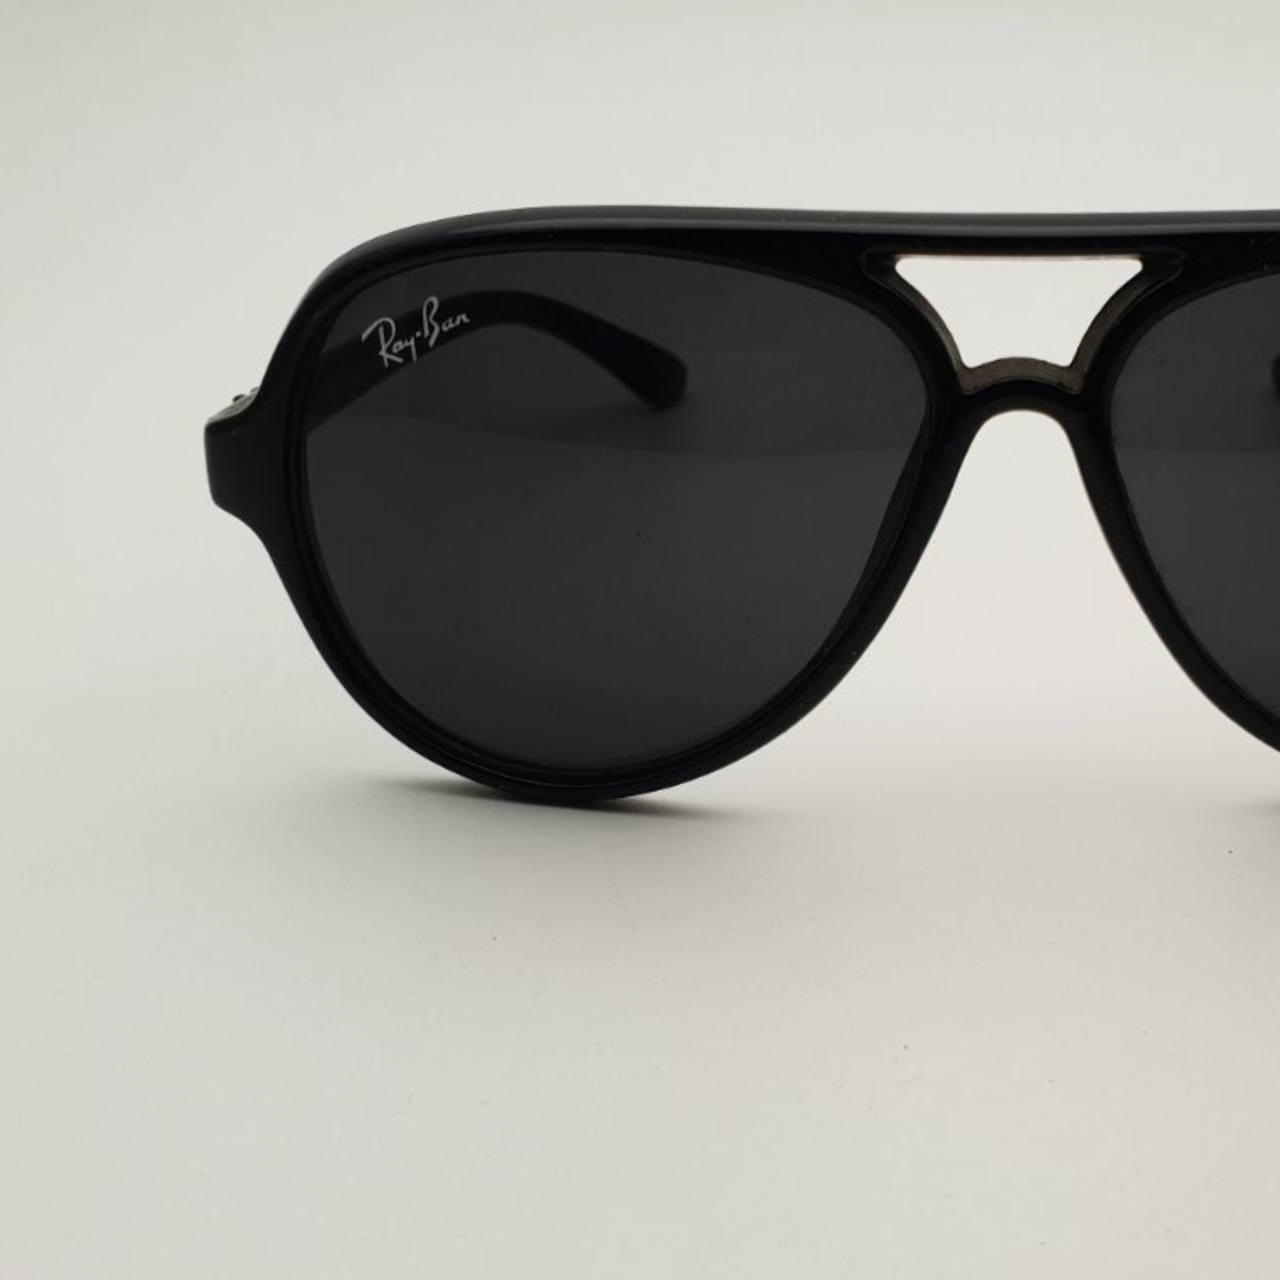 Сонцезахисні окуляри авіатори (краплі) Ray Ban (Рей-Бен) унісекс, брендові, стильні, чорні